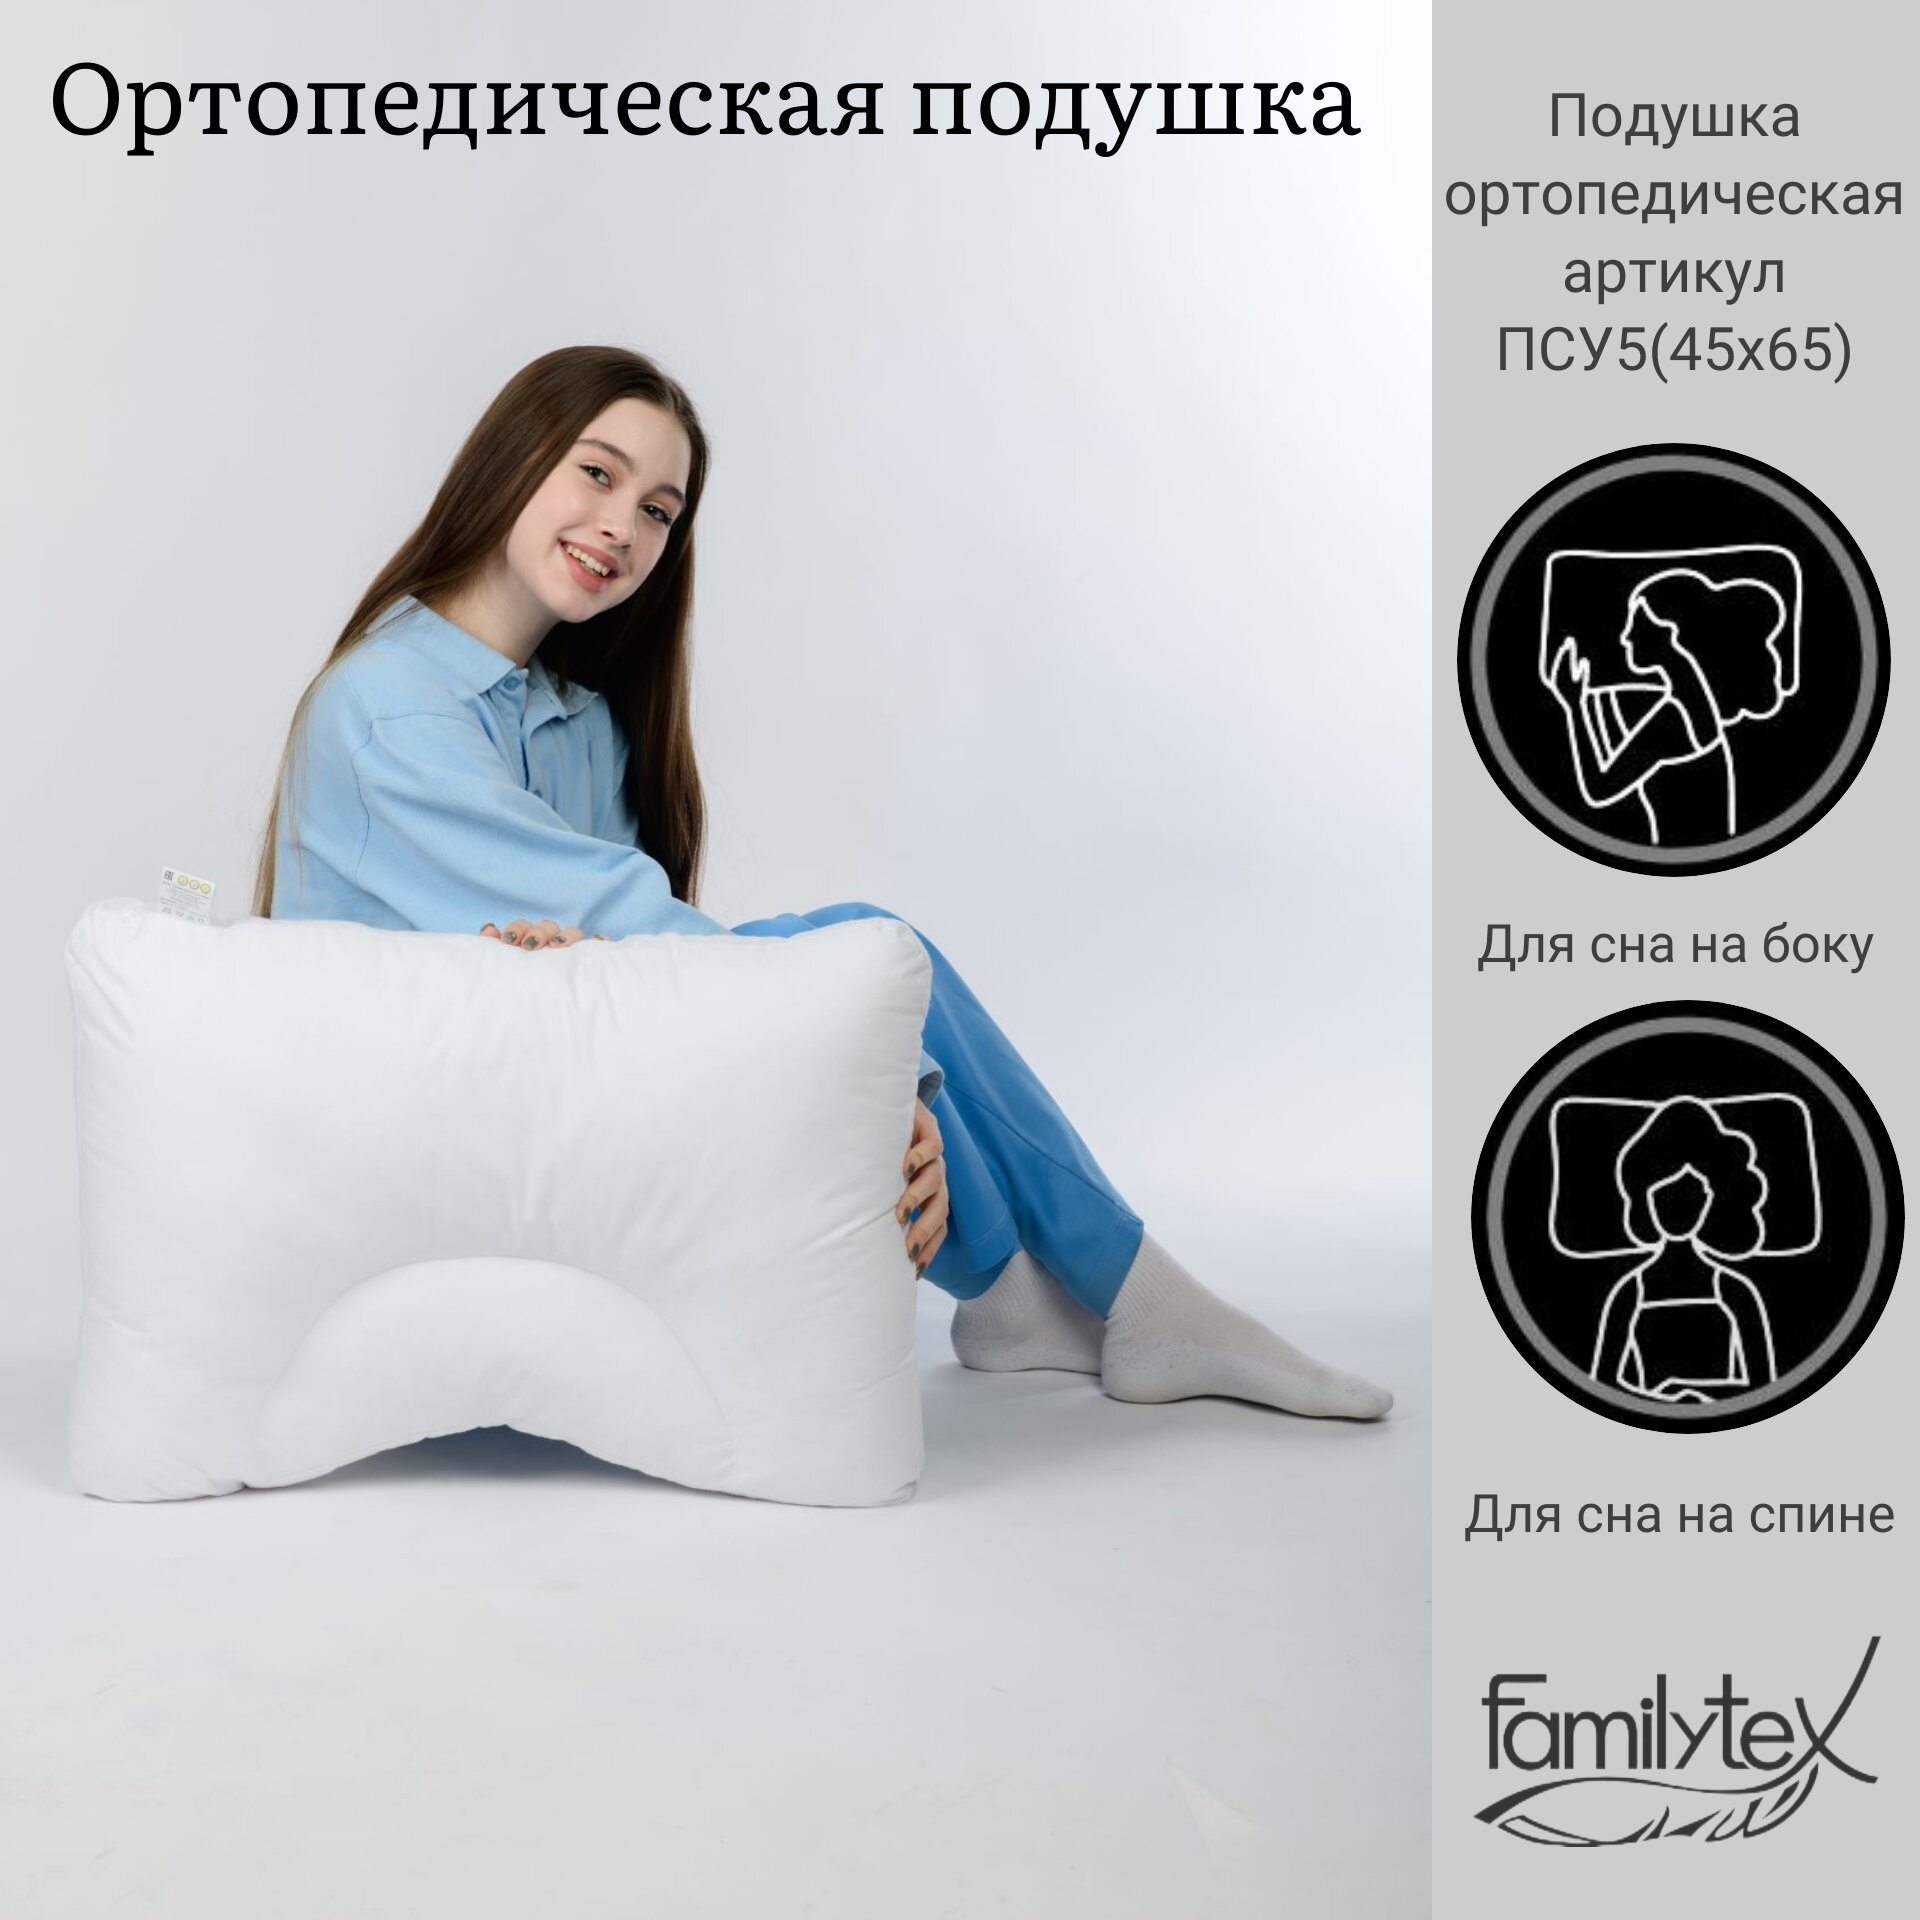 Ортопедическая подушка Familytex, подушка для сна ПСУ5(45х65), высота 16 см, с выемкой под плечо, с валиком под шею.